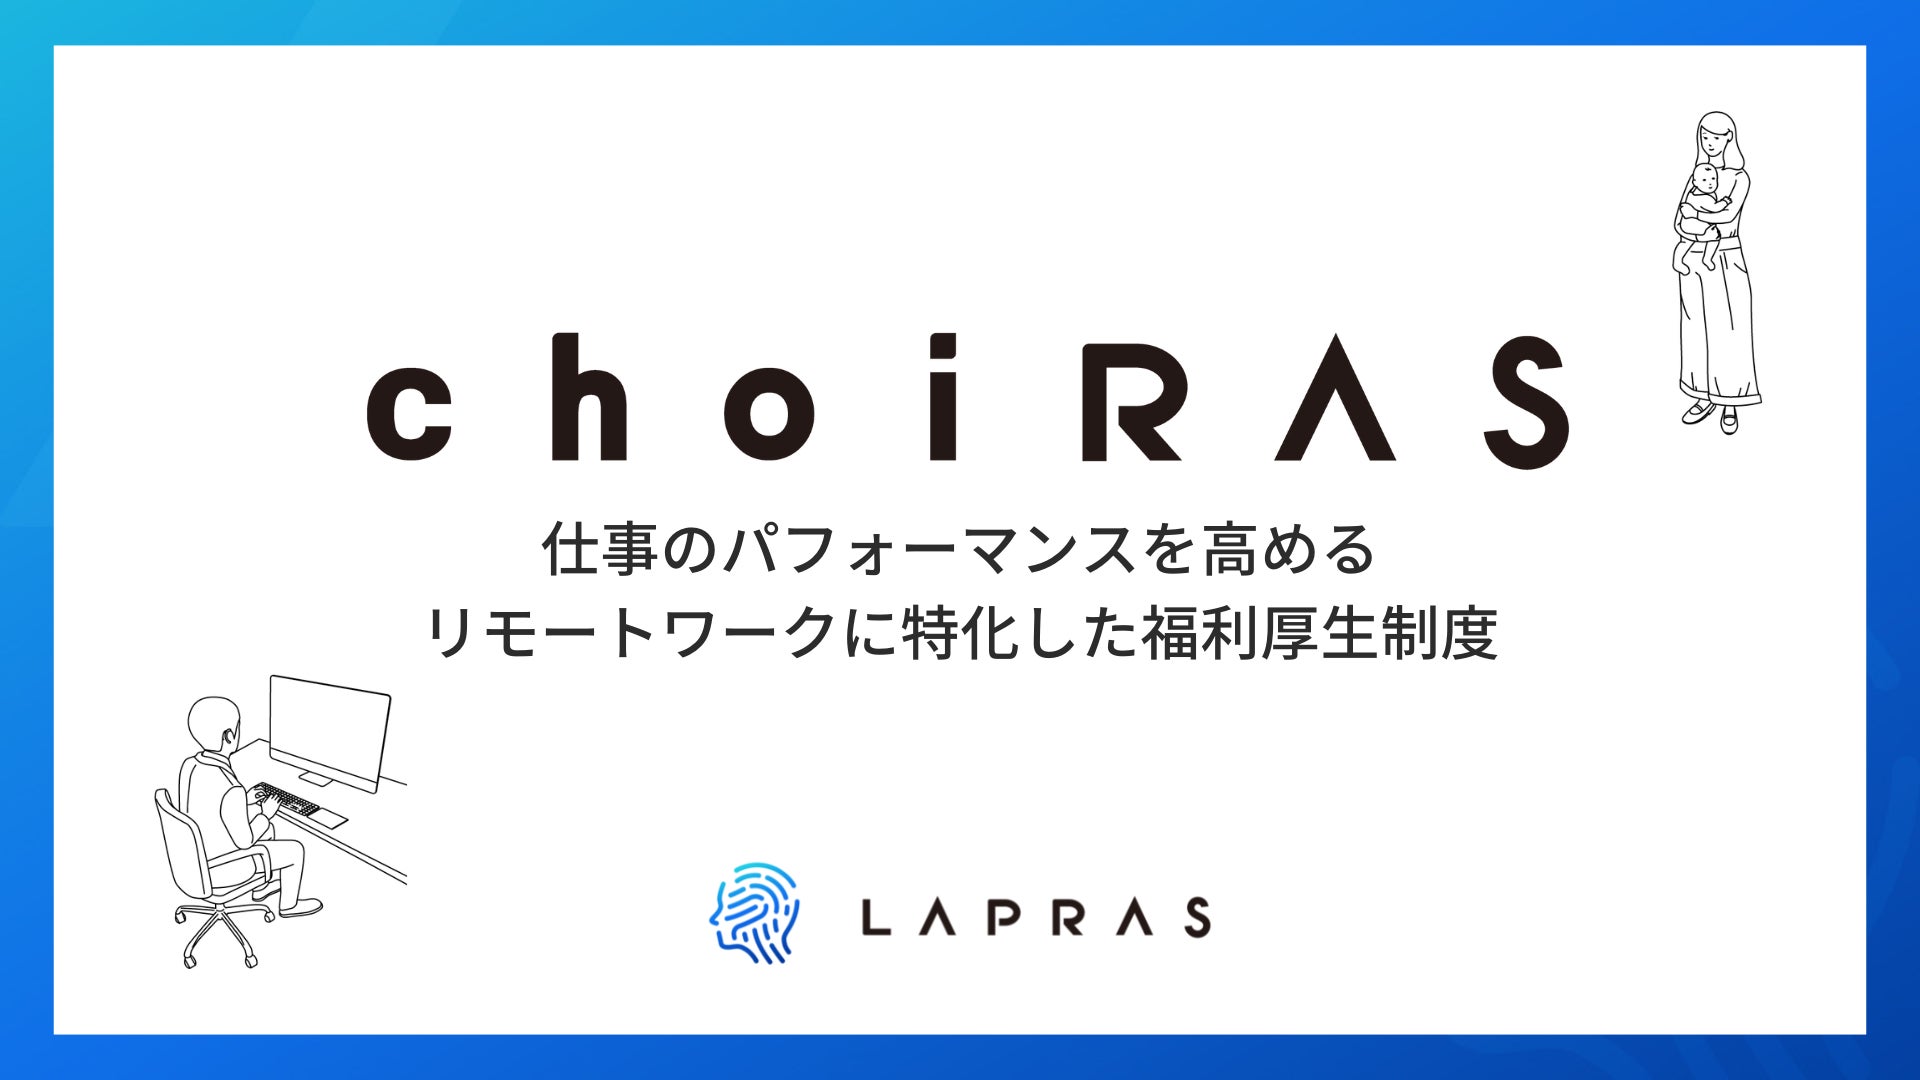 LAPRAS、リモートワークに特化した福利厚生制度「choiRAS（チョイラス）」を開始のサブ画像1